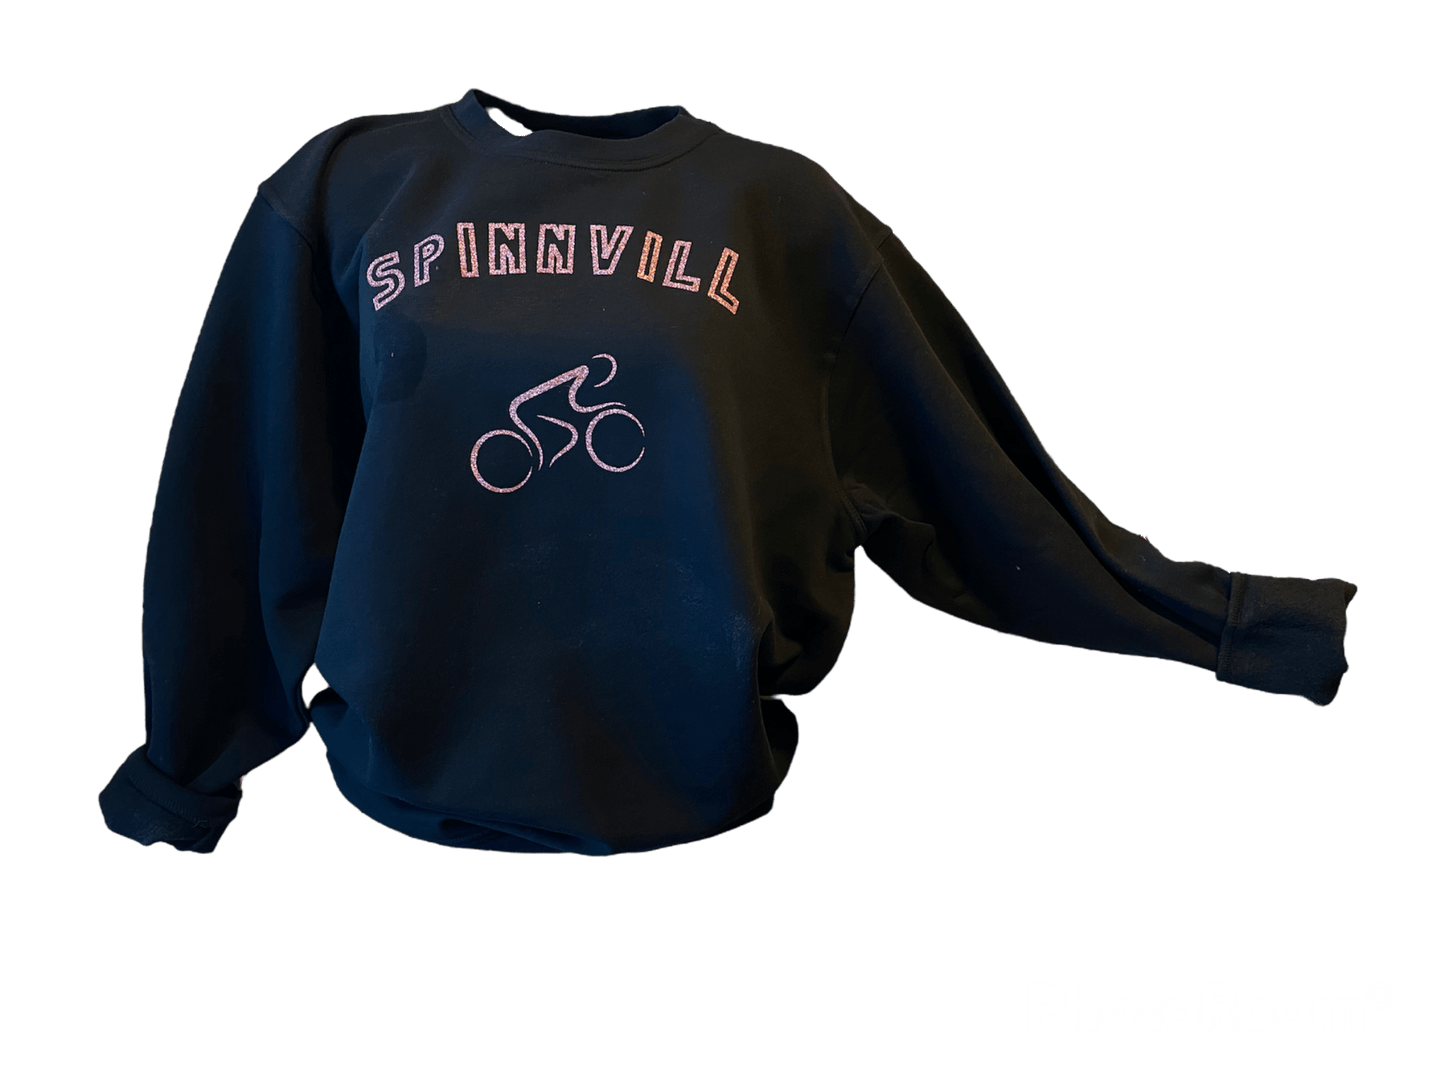 SPINNVILL - Genser - Sweater med sykkel motiv - DoUdare